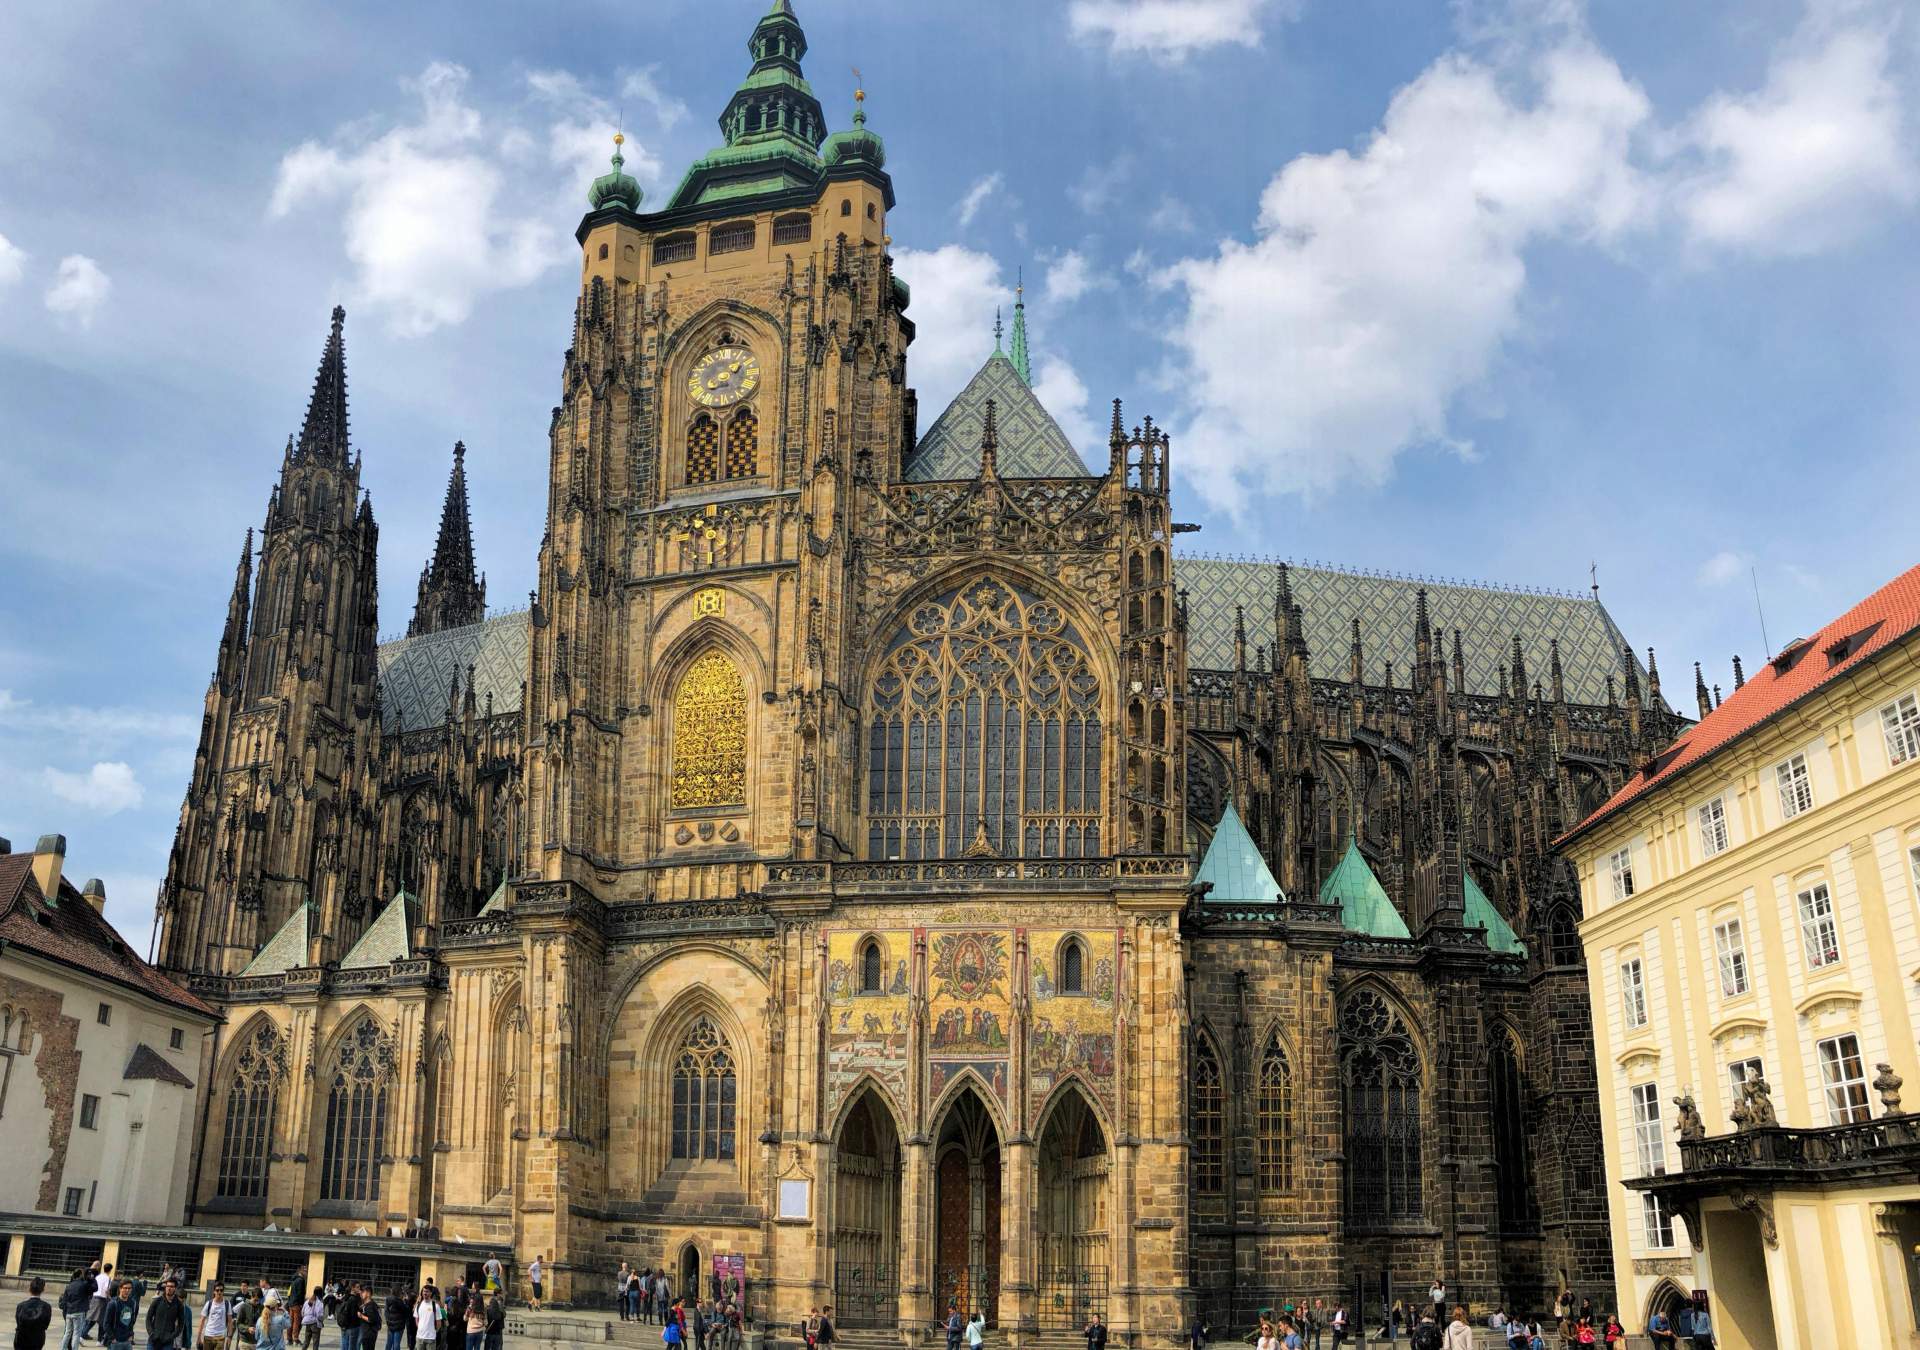 Busreis Tsjechië Bohemen - Praag St. Vituskathedraal ©Manfred Reinert from Pixabay